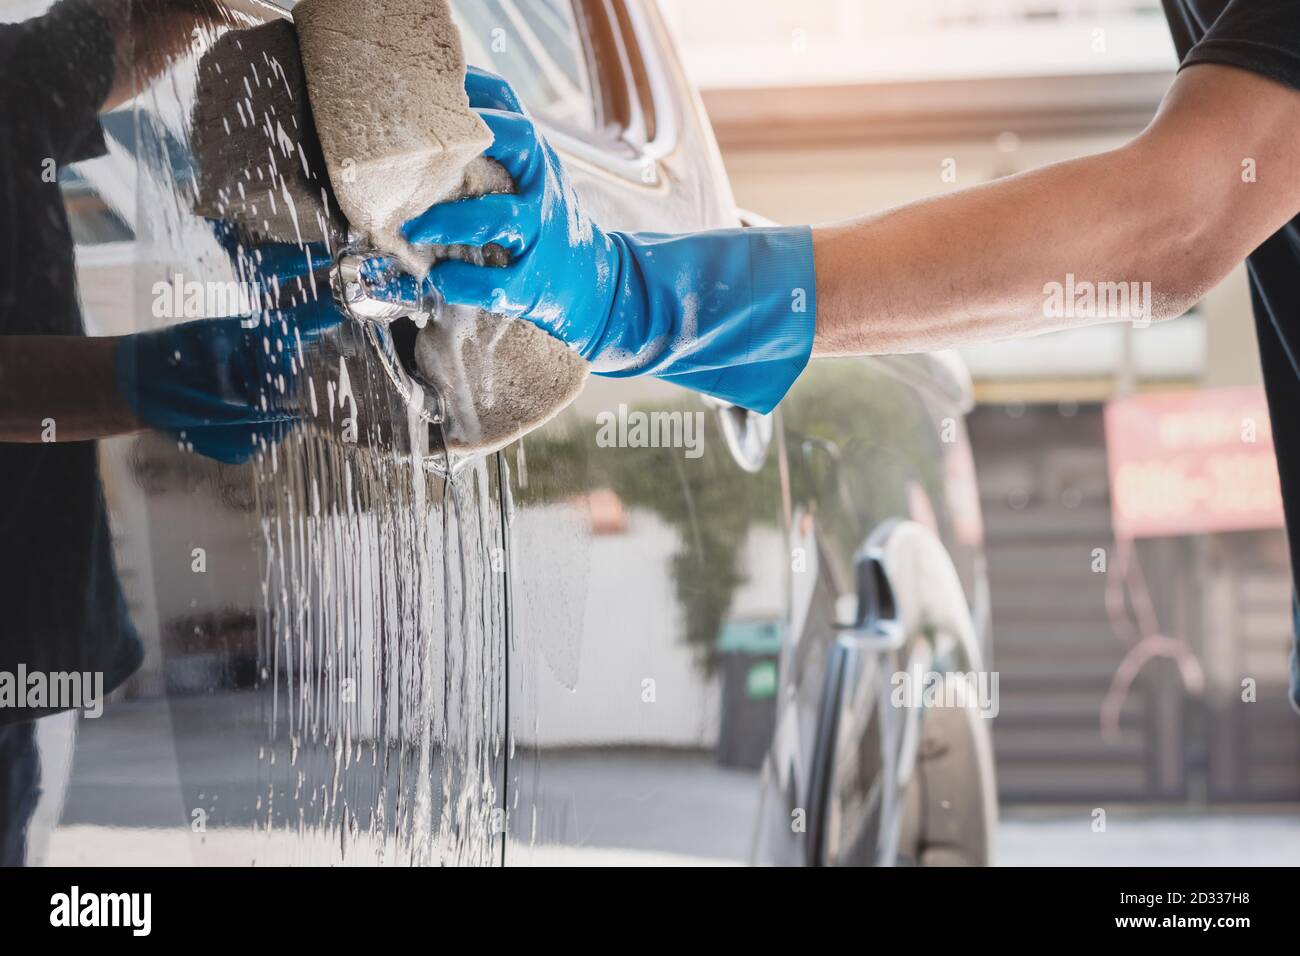 Personnel de lavage de voiture portant des gants en caoutchouc bleu à l'aide d'une éponge humidifiée avec du savon et de l'eau pour nettoyer la voiture. Banque D'Images